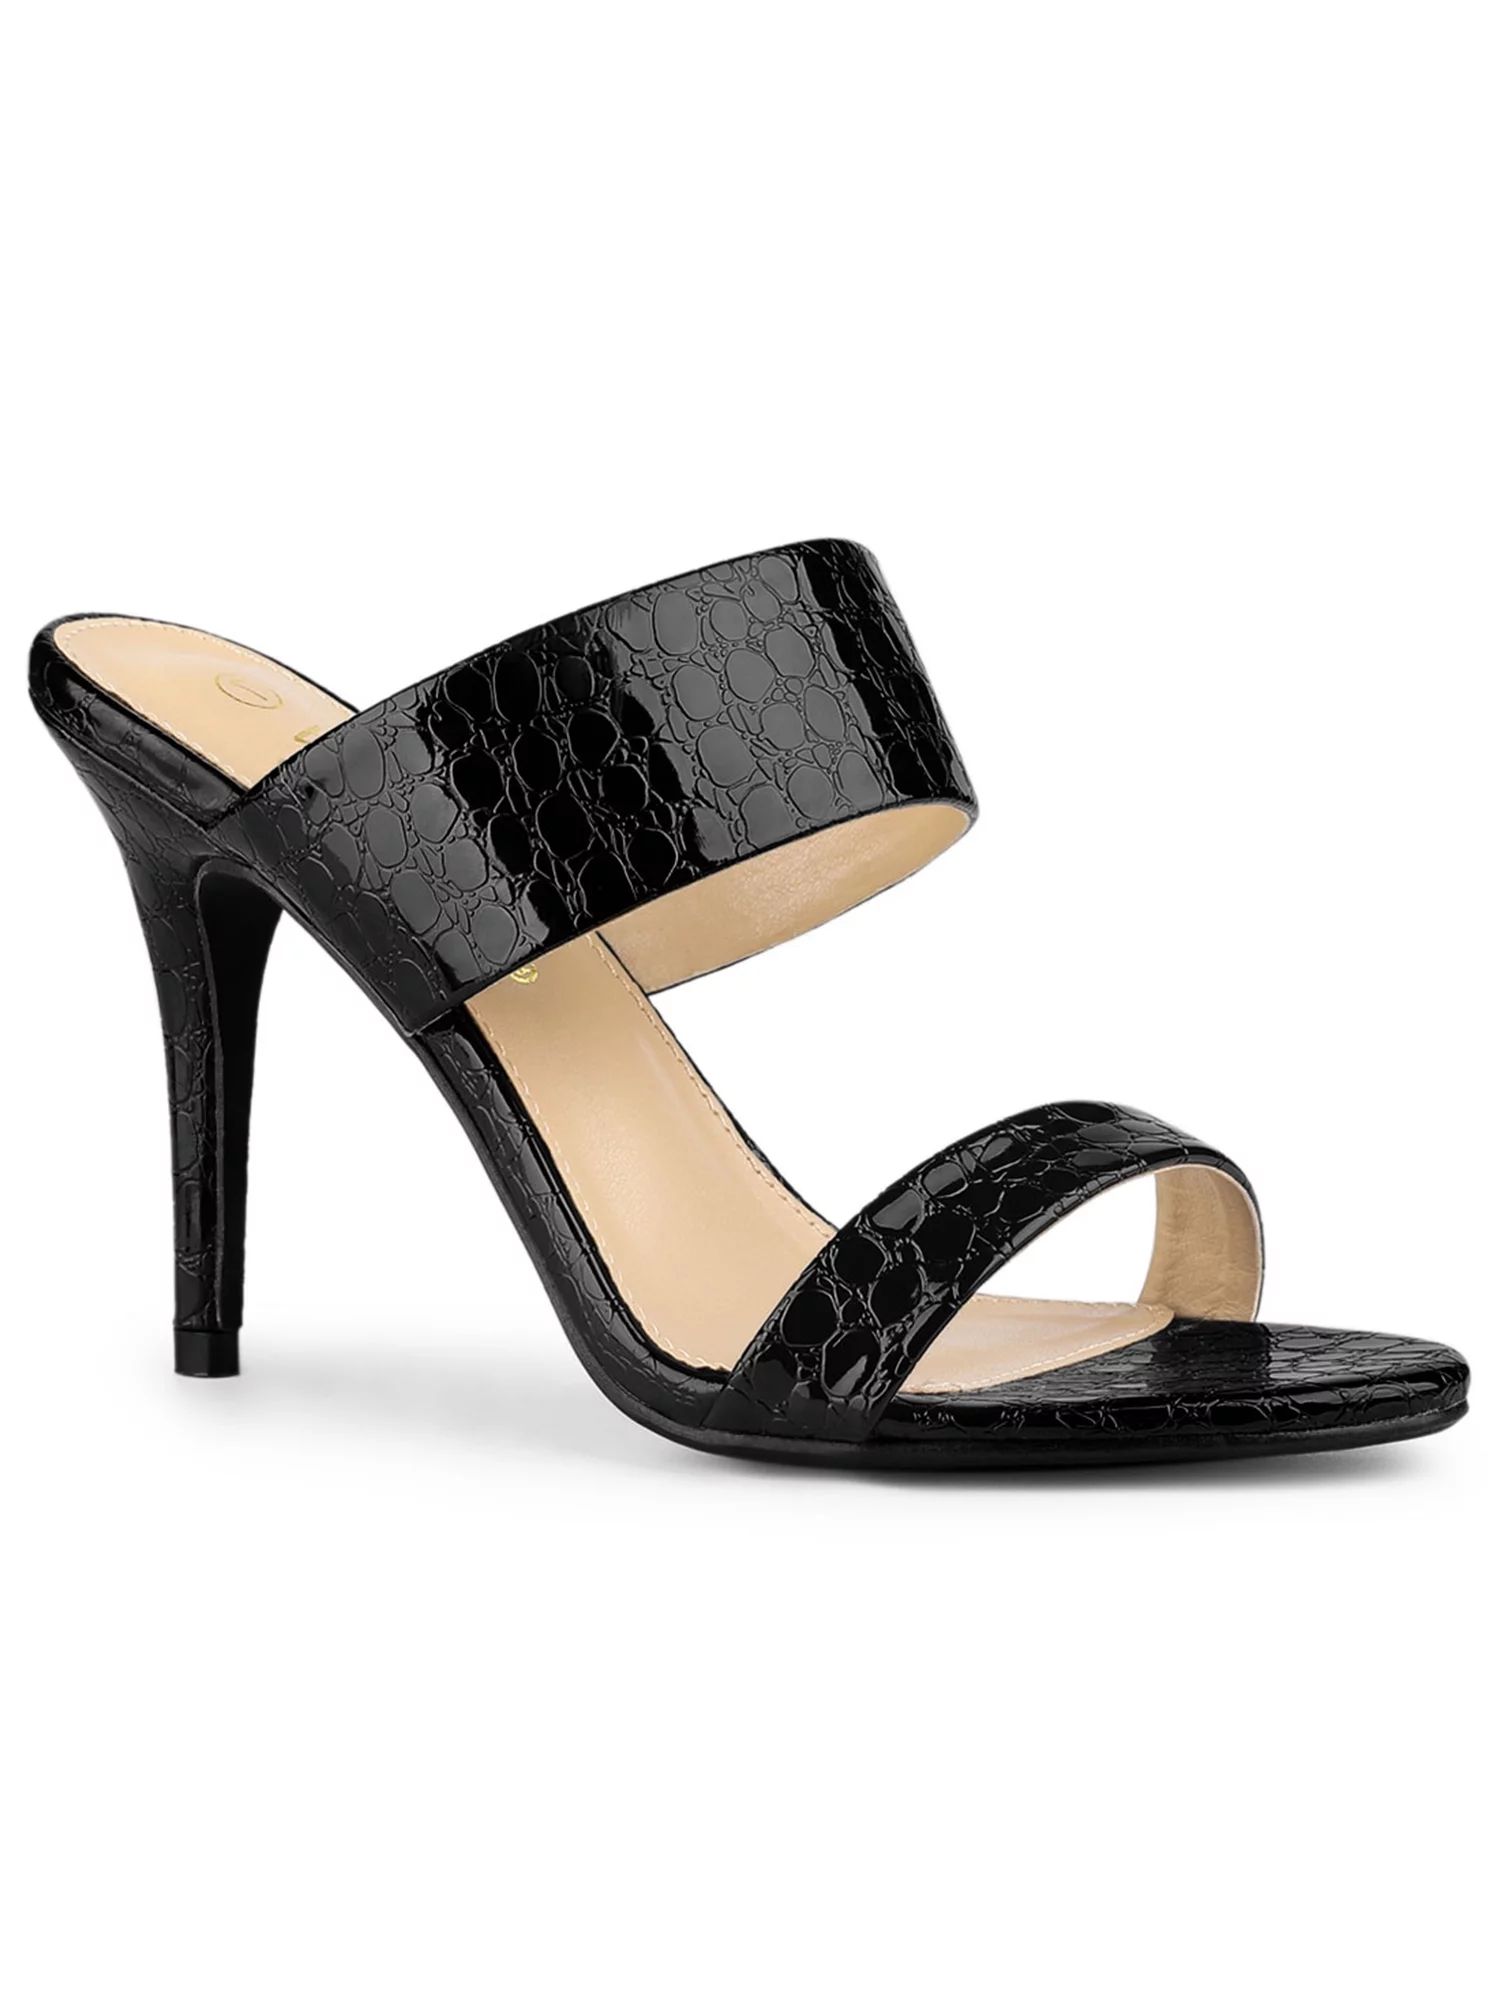 Allegra K Women's Sandals Stiletto Heels Open Toe Slide Sandals - Walmart.com | Walmart (US)